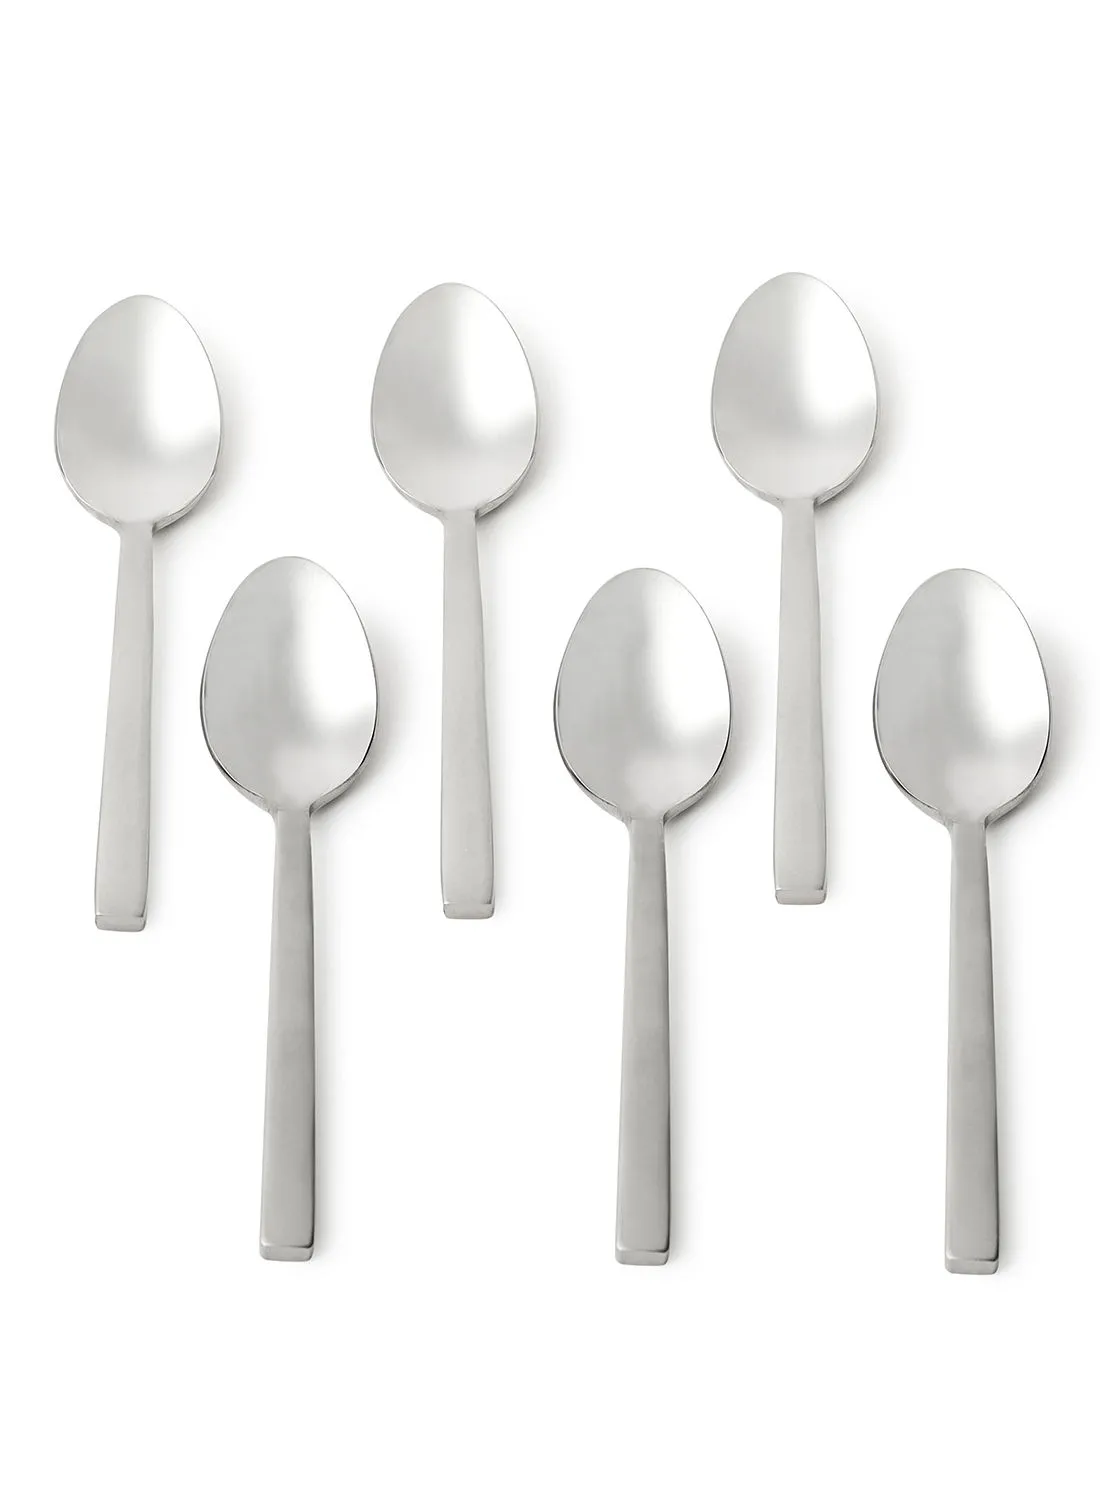 noon east 6 Piece Teaspoons Set - Made Of Stainless Steel - Silverware Flatware - Spoons - Spoon Set - Tea Spoons - Serves 6 - Design Silver Antila